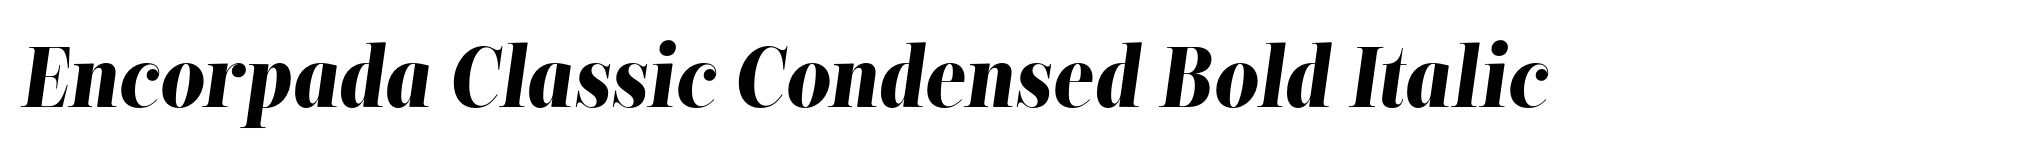 Encorpada Classic Condensed Bold Italic image